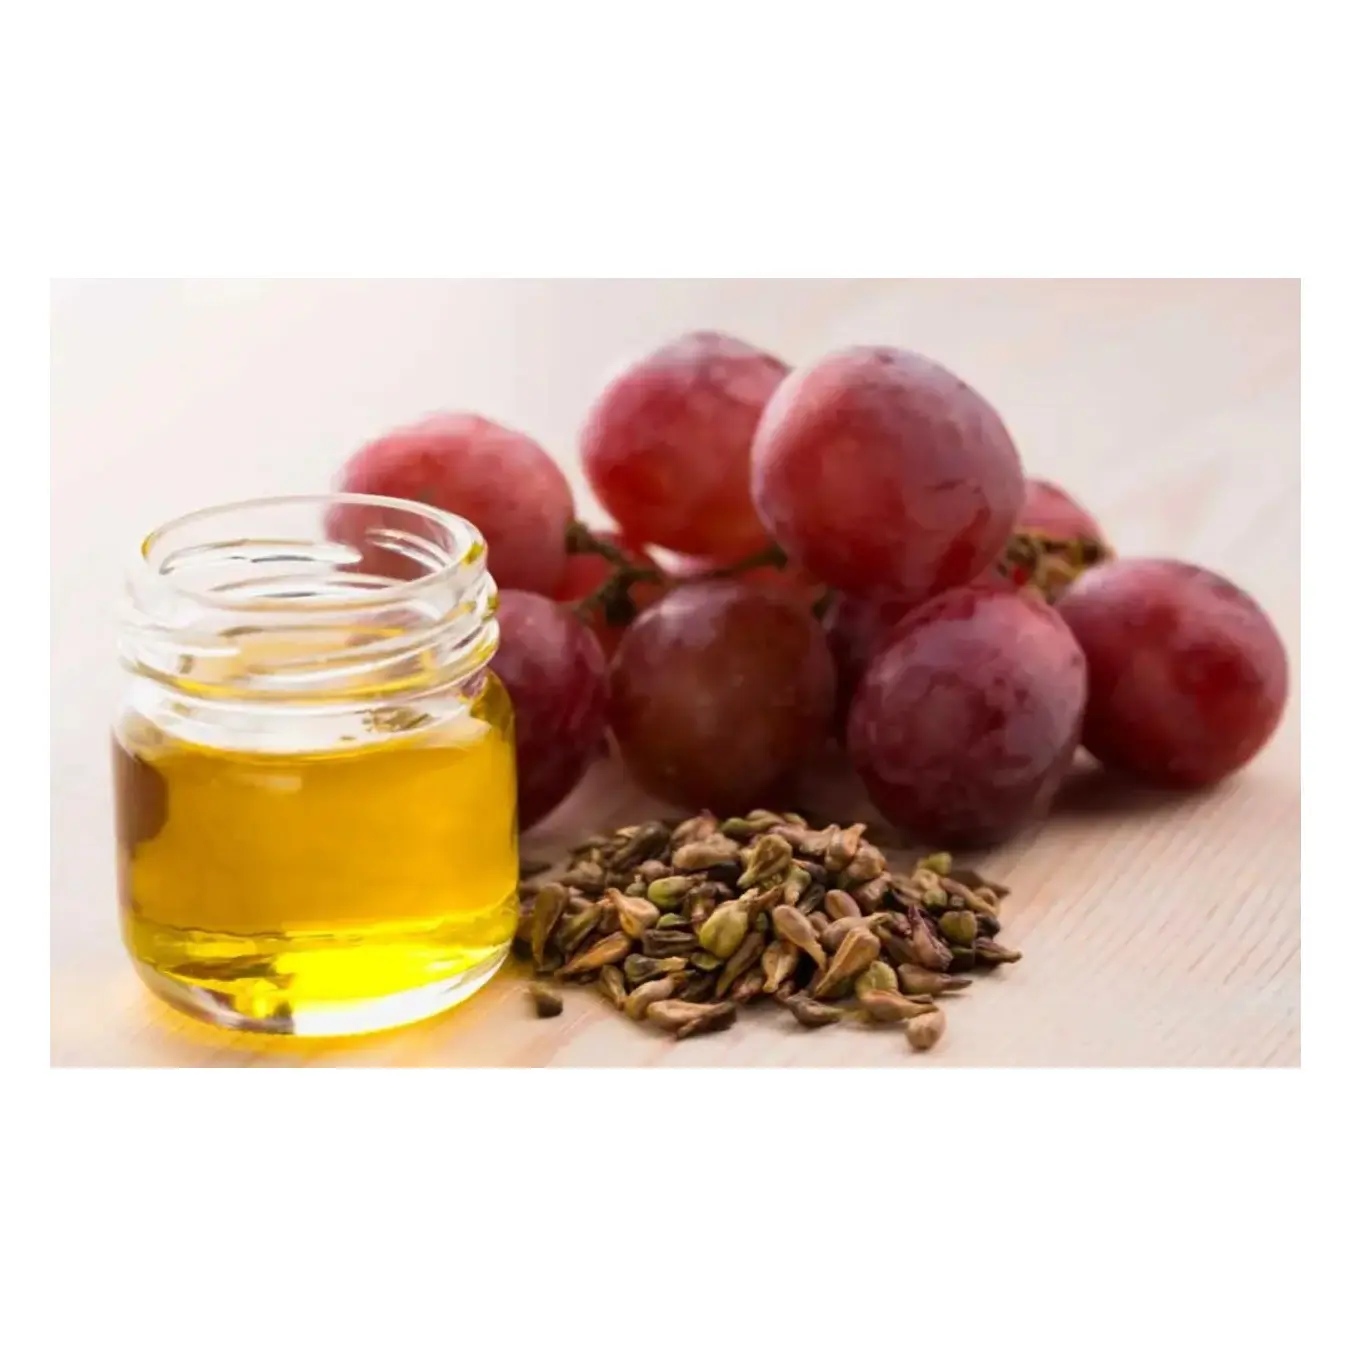 Aceite esencial de semilla de uva natural orgánico puro 100% prensado en frío a granel disponible a la venta